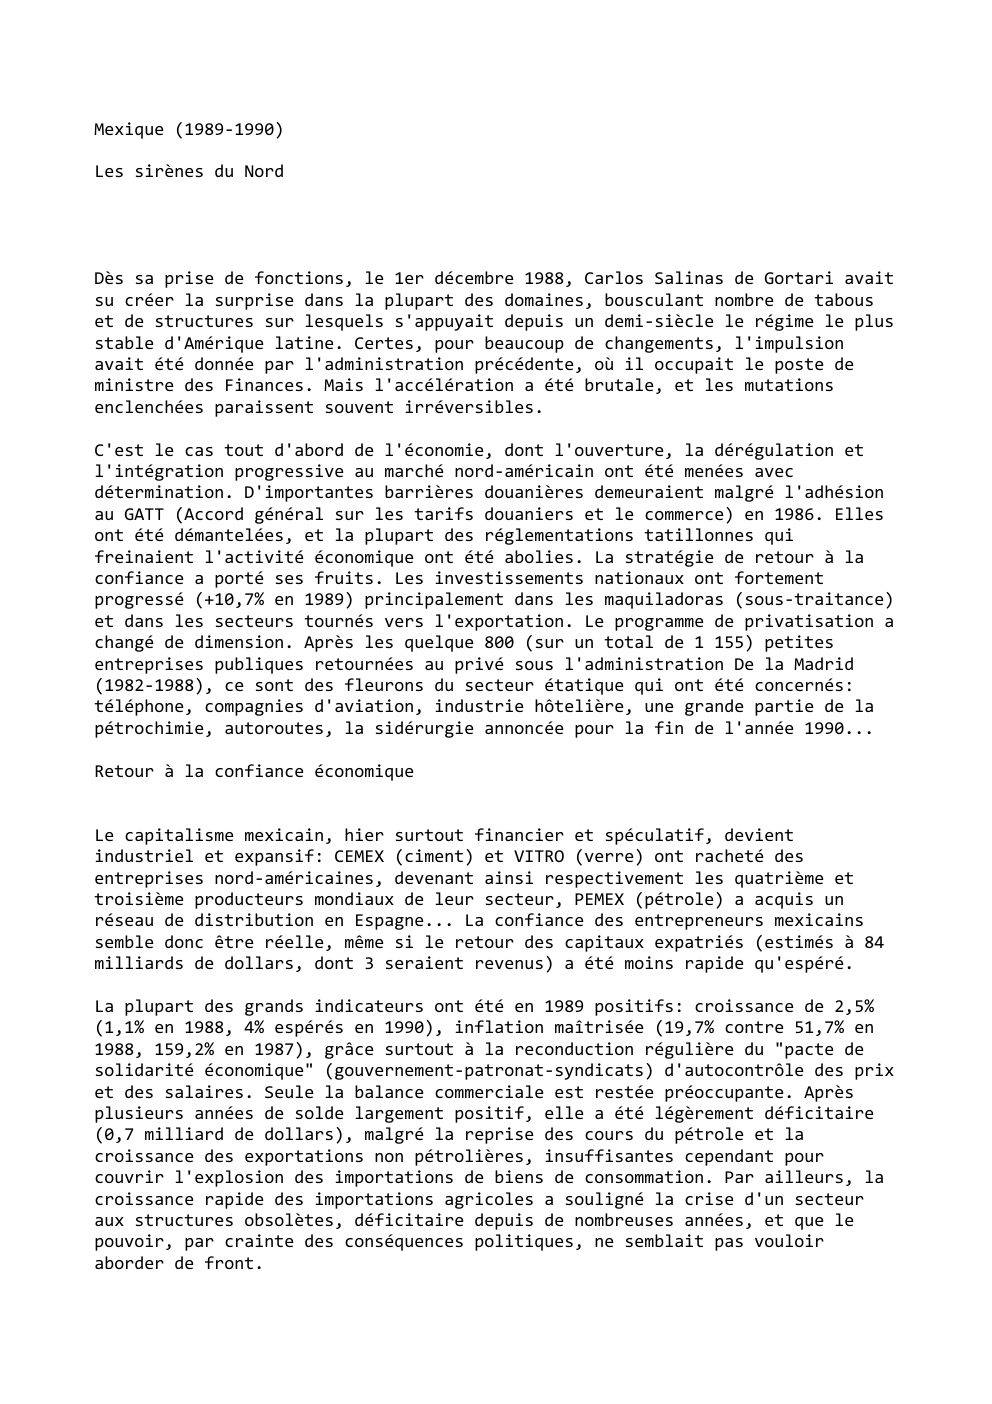 Prévisualisation du document Mexique (1989-1990)
Les sirènes du Nord

Dès sa prise de fonctions, le 1er décembre 1988, Carlos Salinas de Gortari avait...